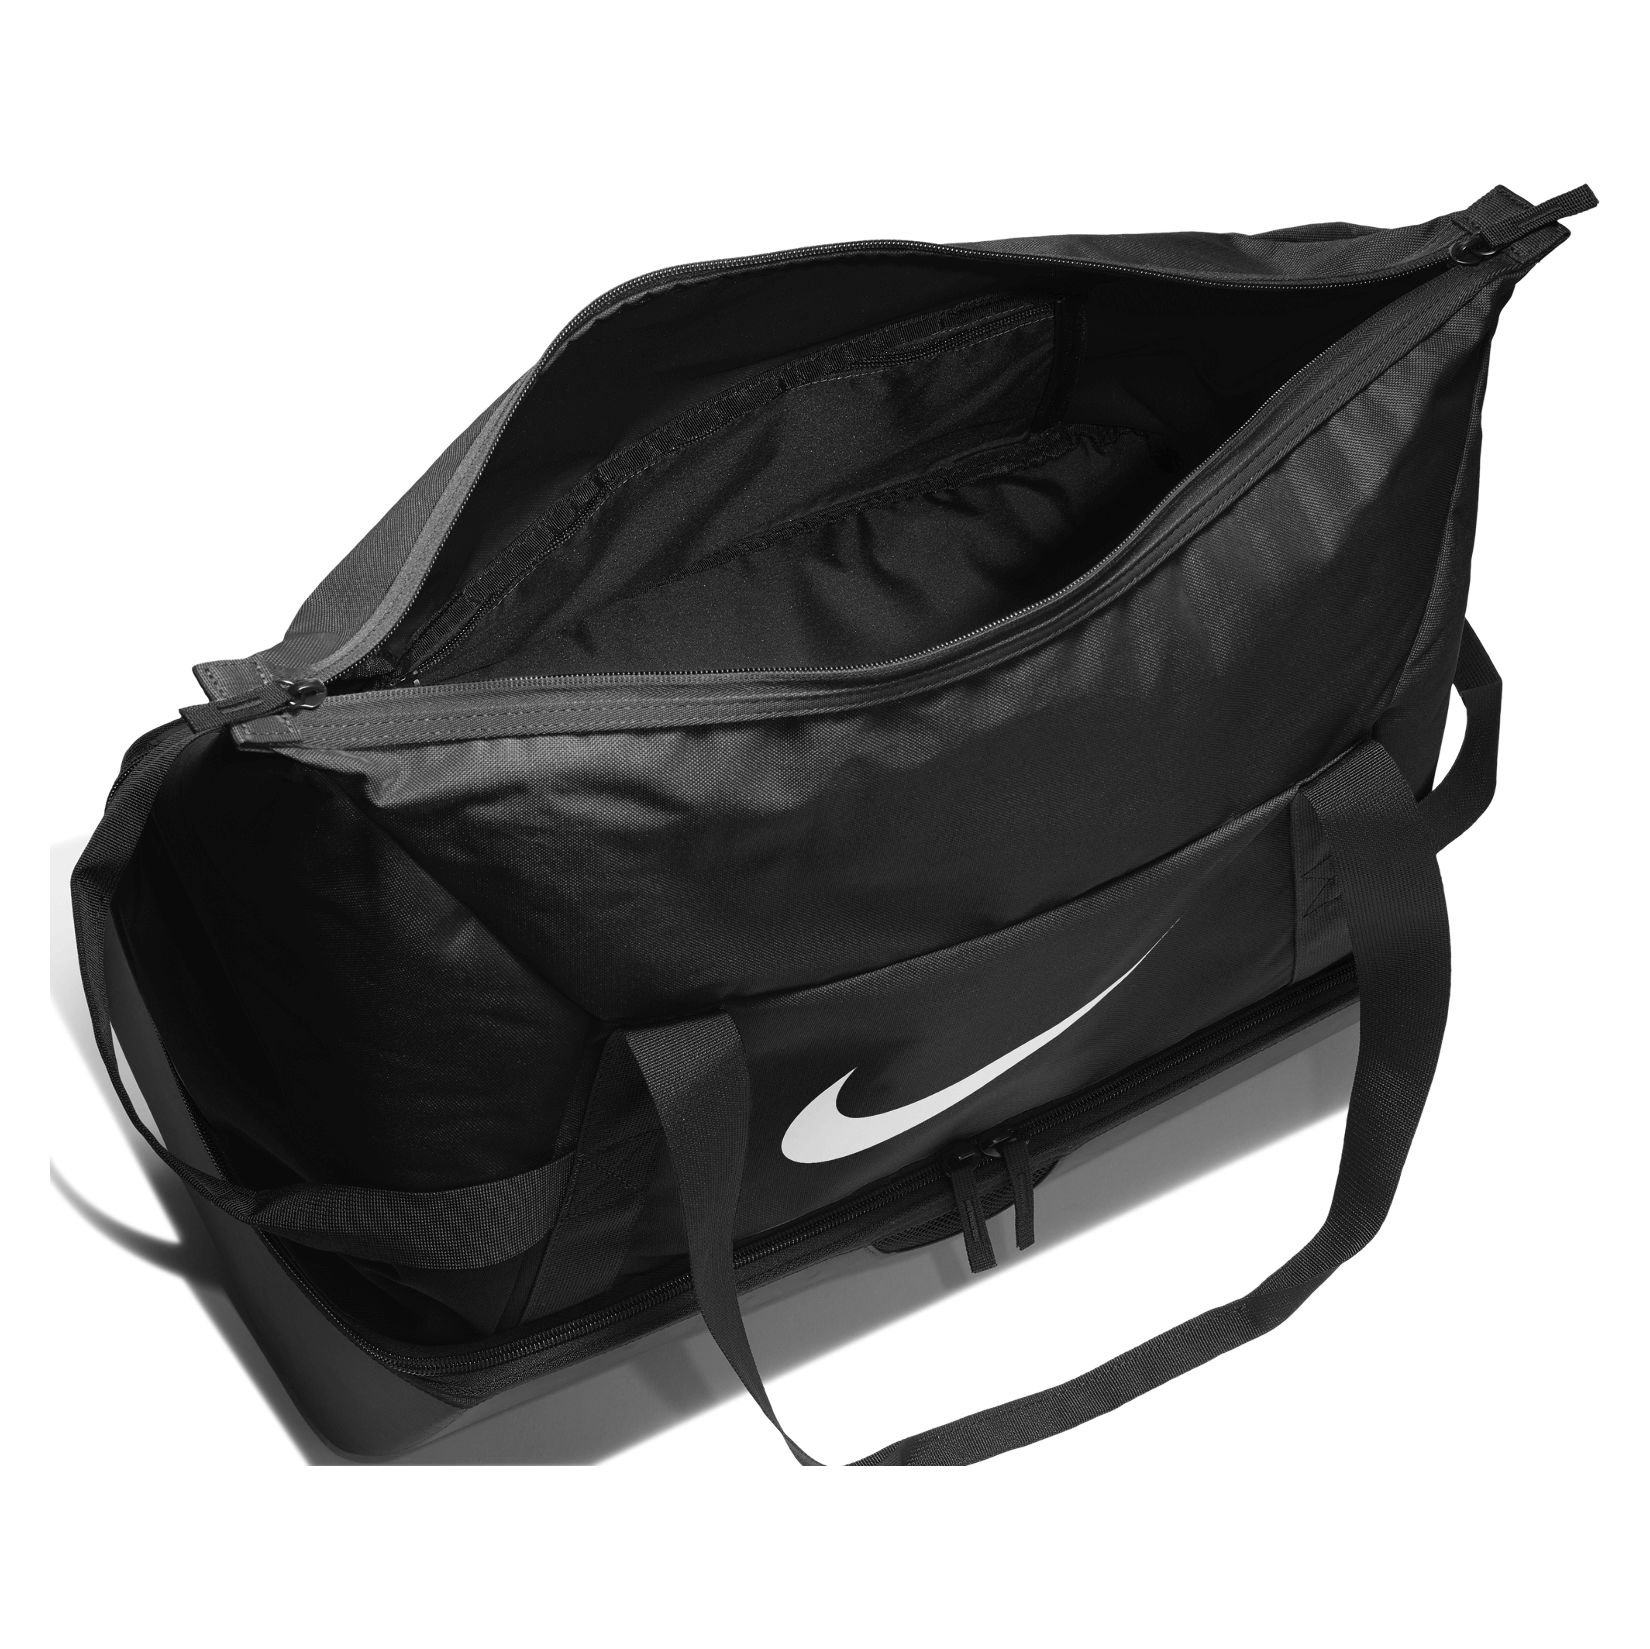 Nike Academy Team Hardcase Bag (large) Black-Black-White